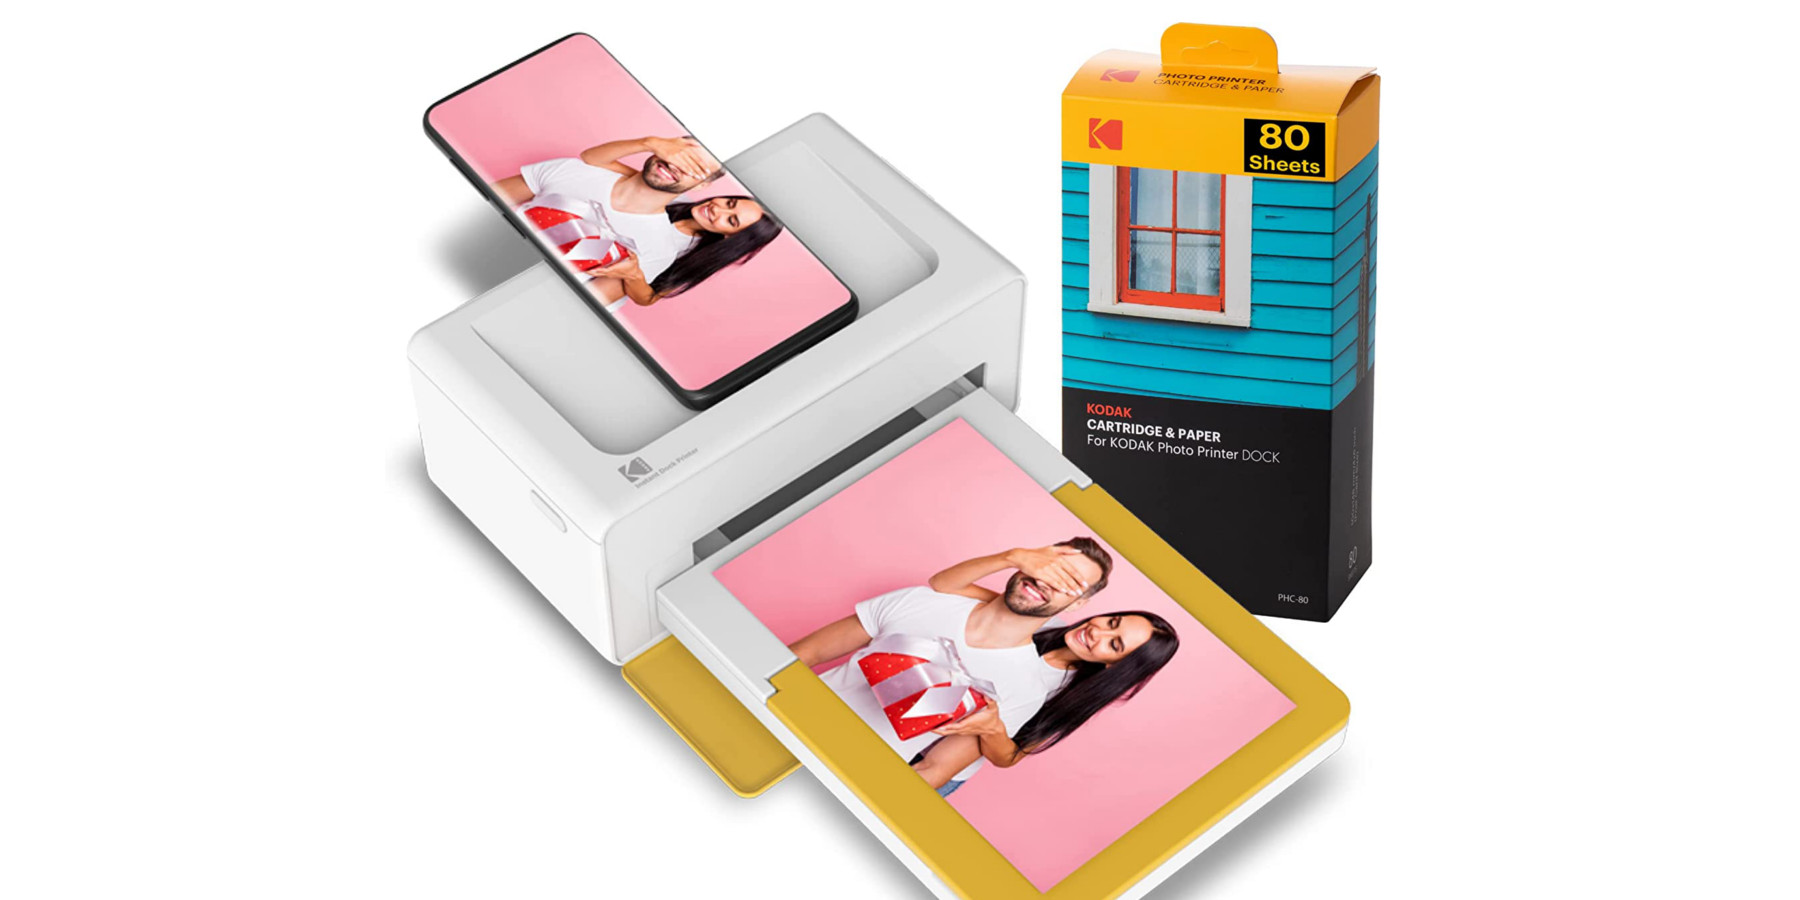 Kodak Photo Printer Mini Review: A Mobile Photo Standout